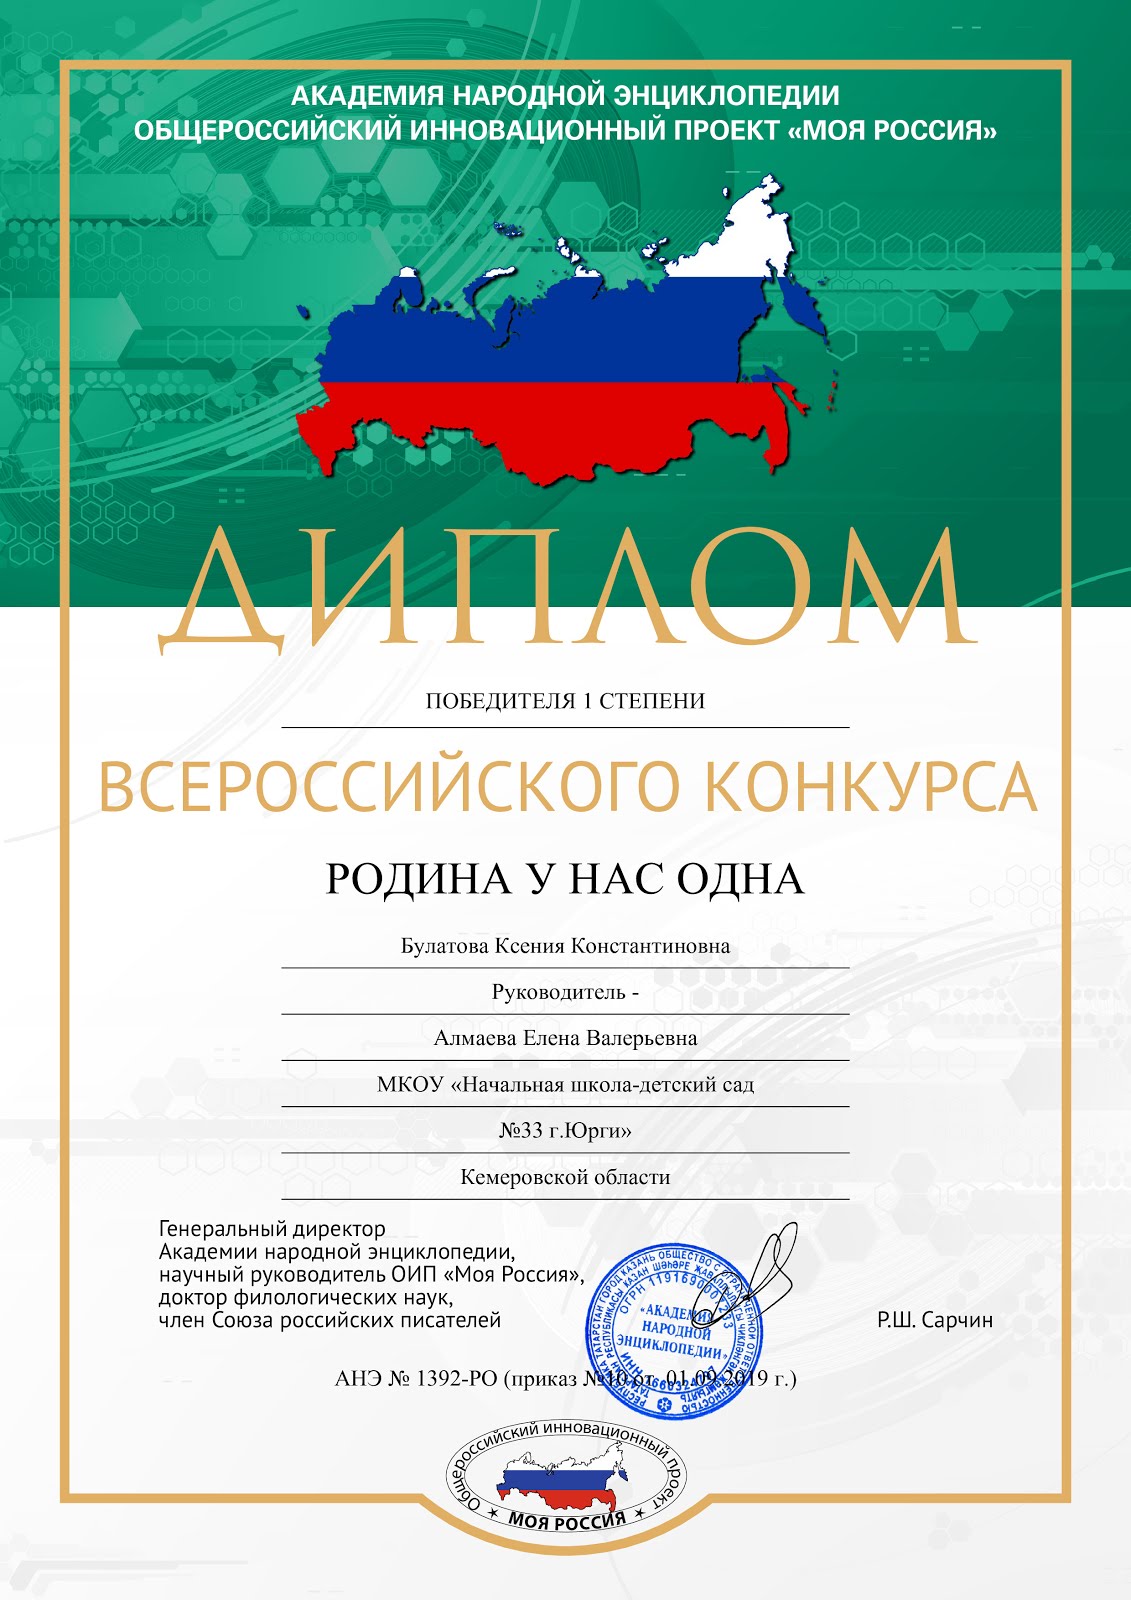 Победитель всероссийского конкурса